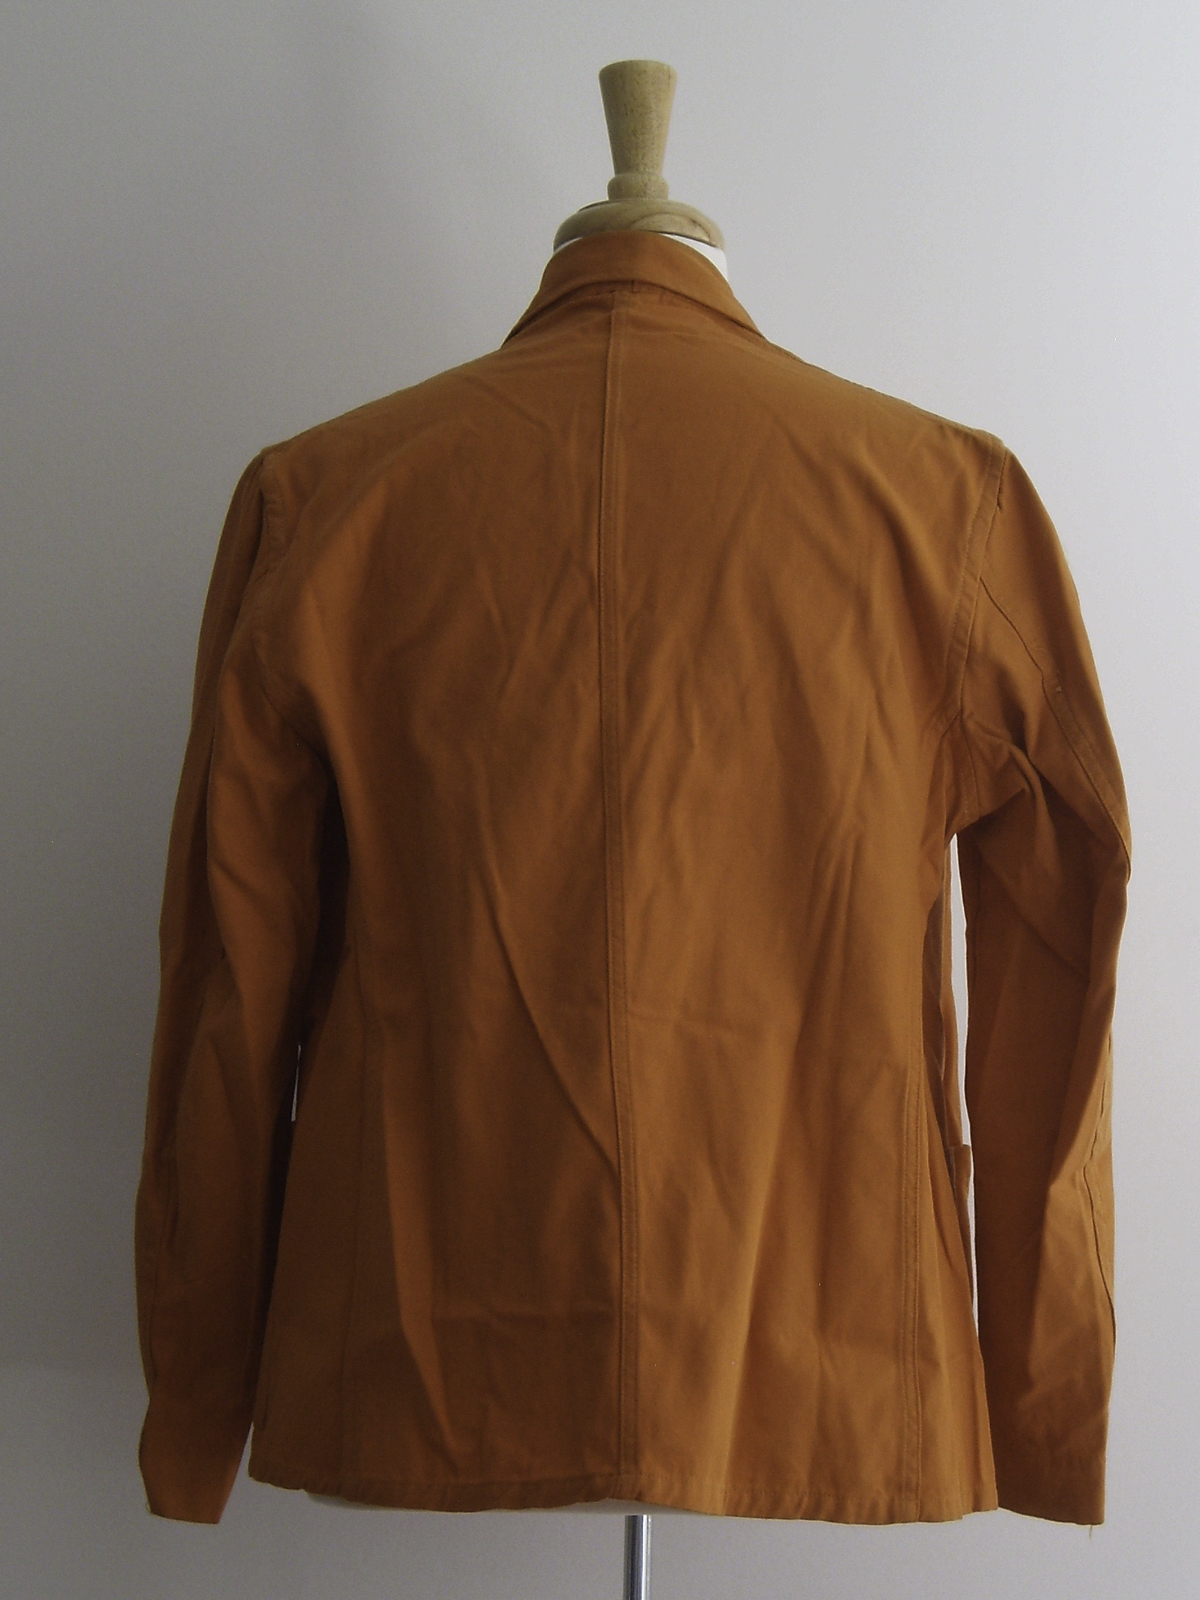 Reunion Jacket 1925 Variation 3 Rear